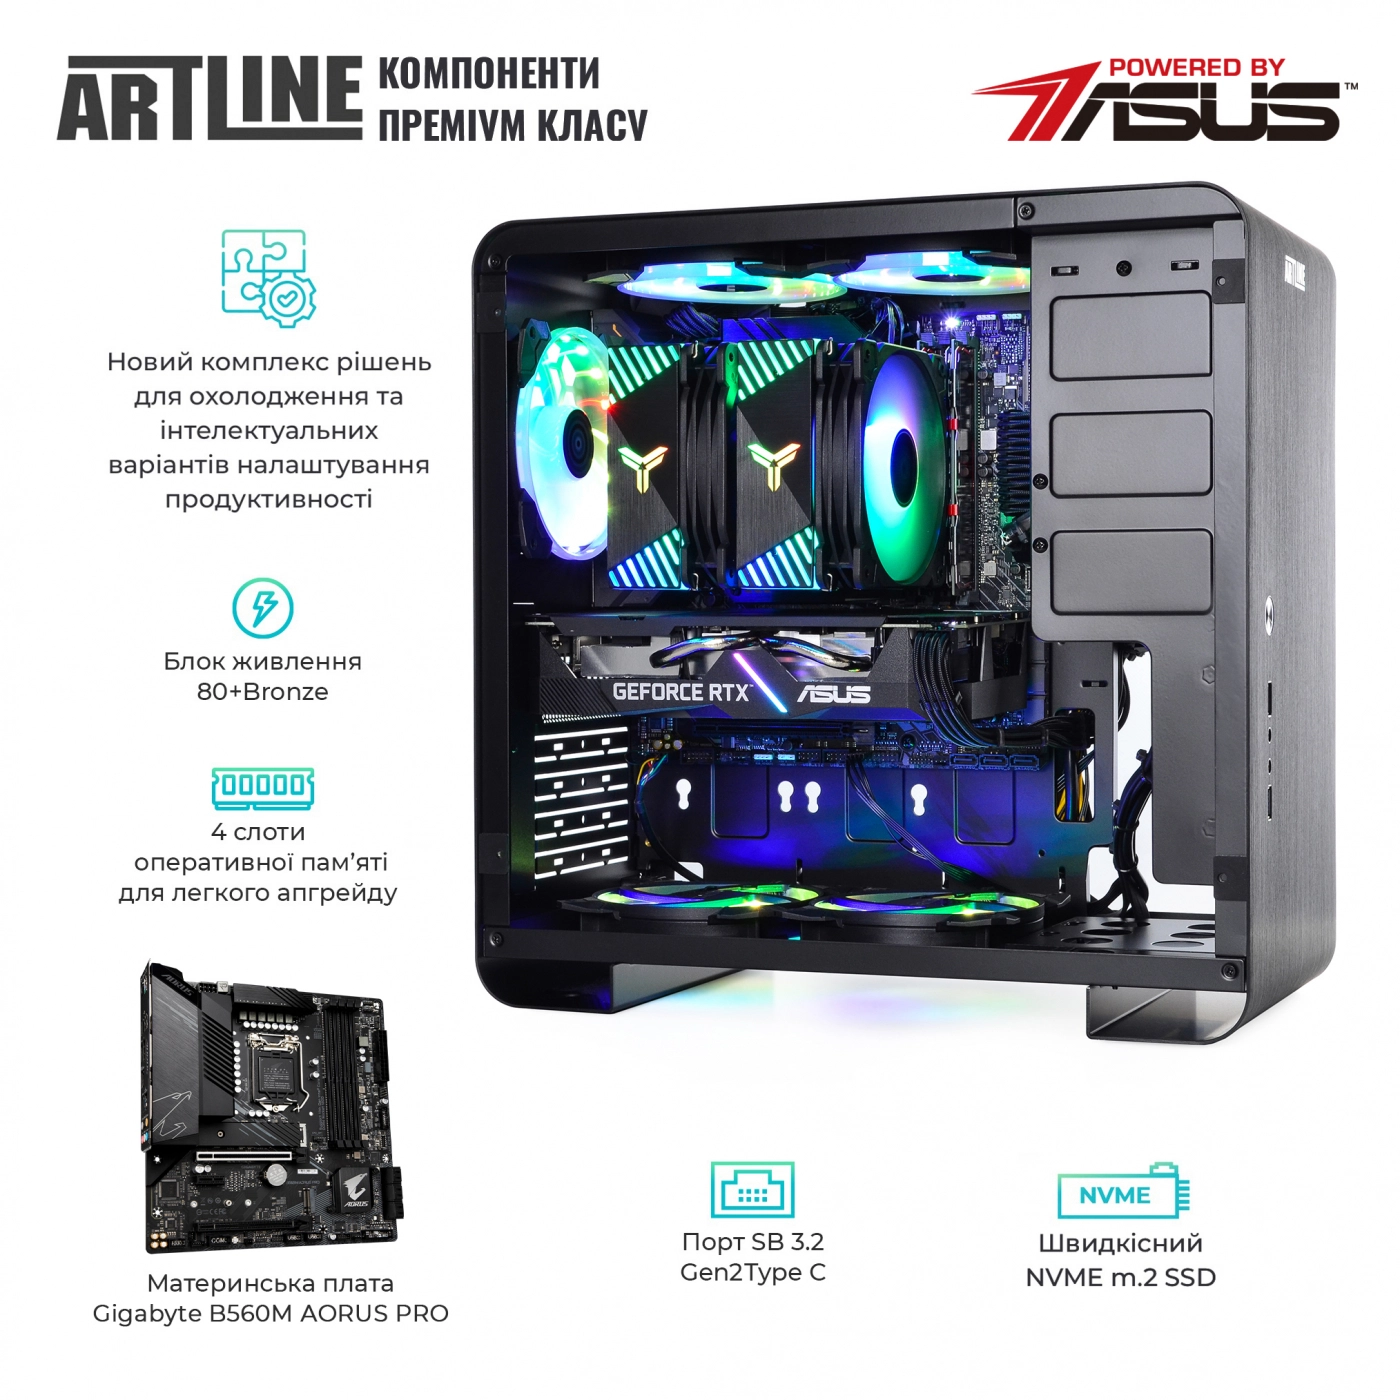 Купить Компьютер ARTLINE Gaming X75v35 - фото 3